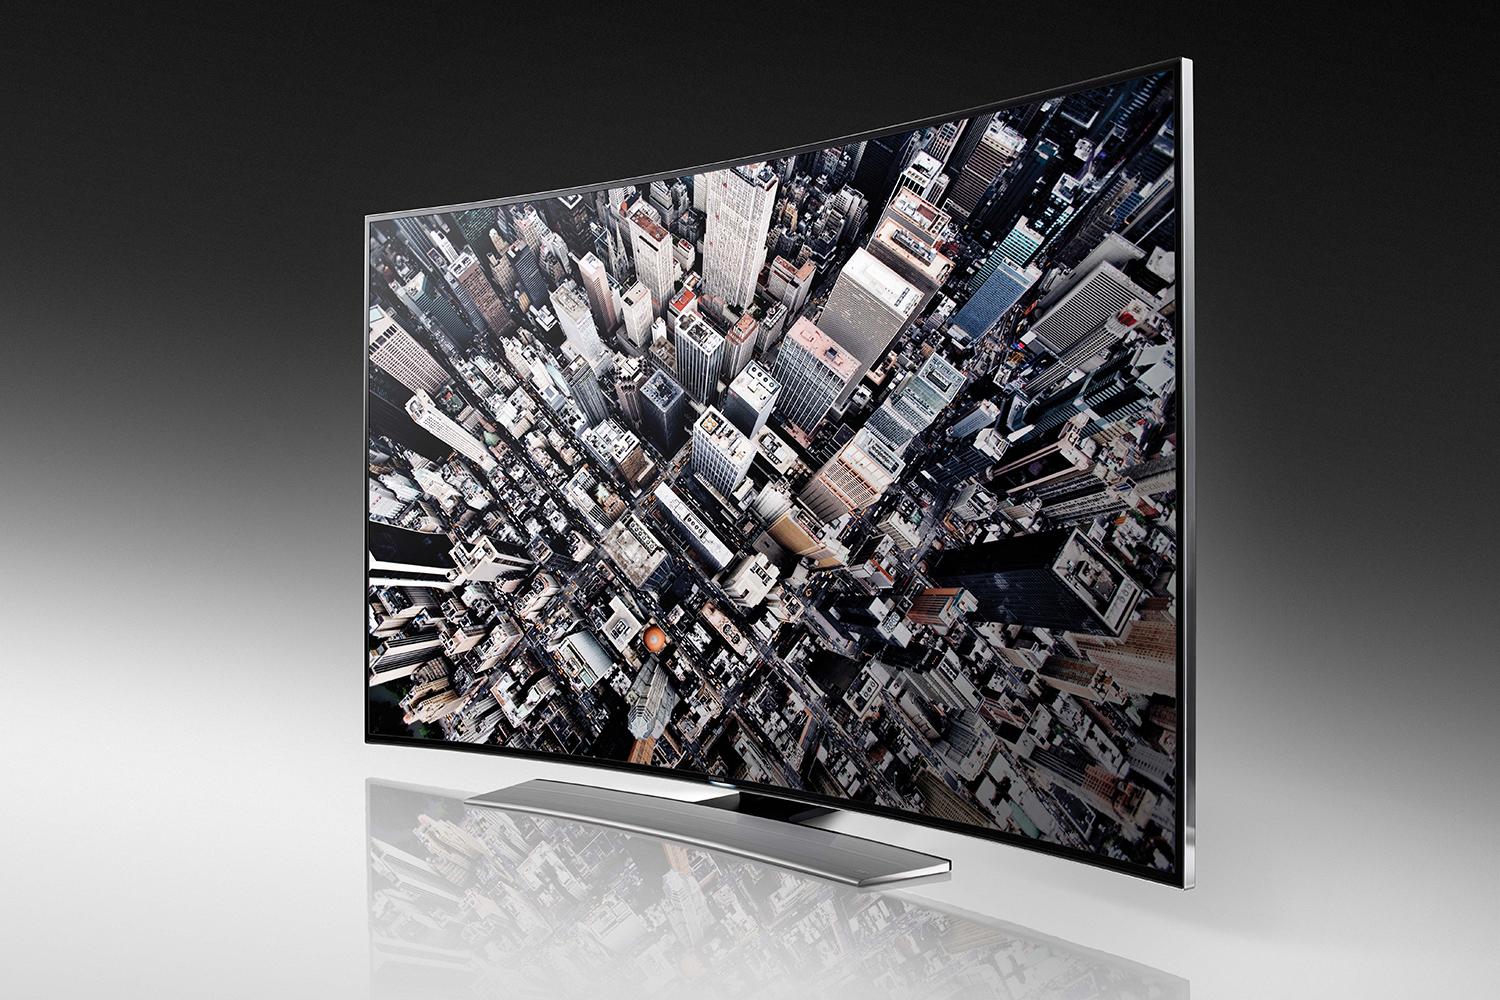 Samsung UHD TV 65 9000. Samsung TV 2014 hu9000. Samsung UHD 65 2015 года. Телевизор Samsung 2014 года выпуска. Телевизор самсунг 2014